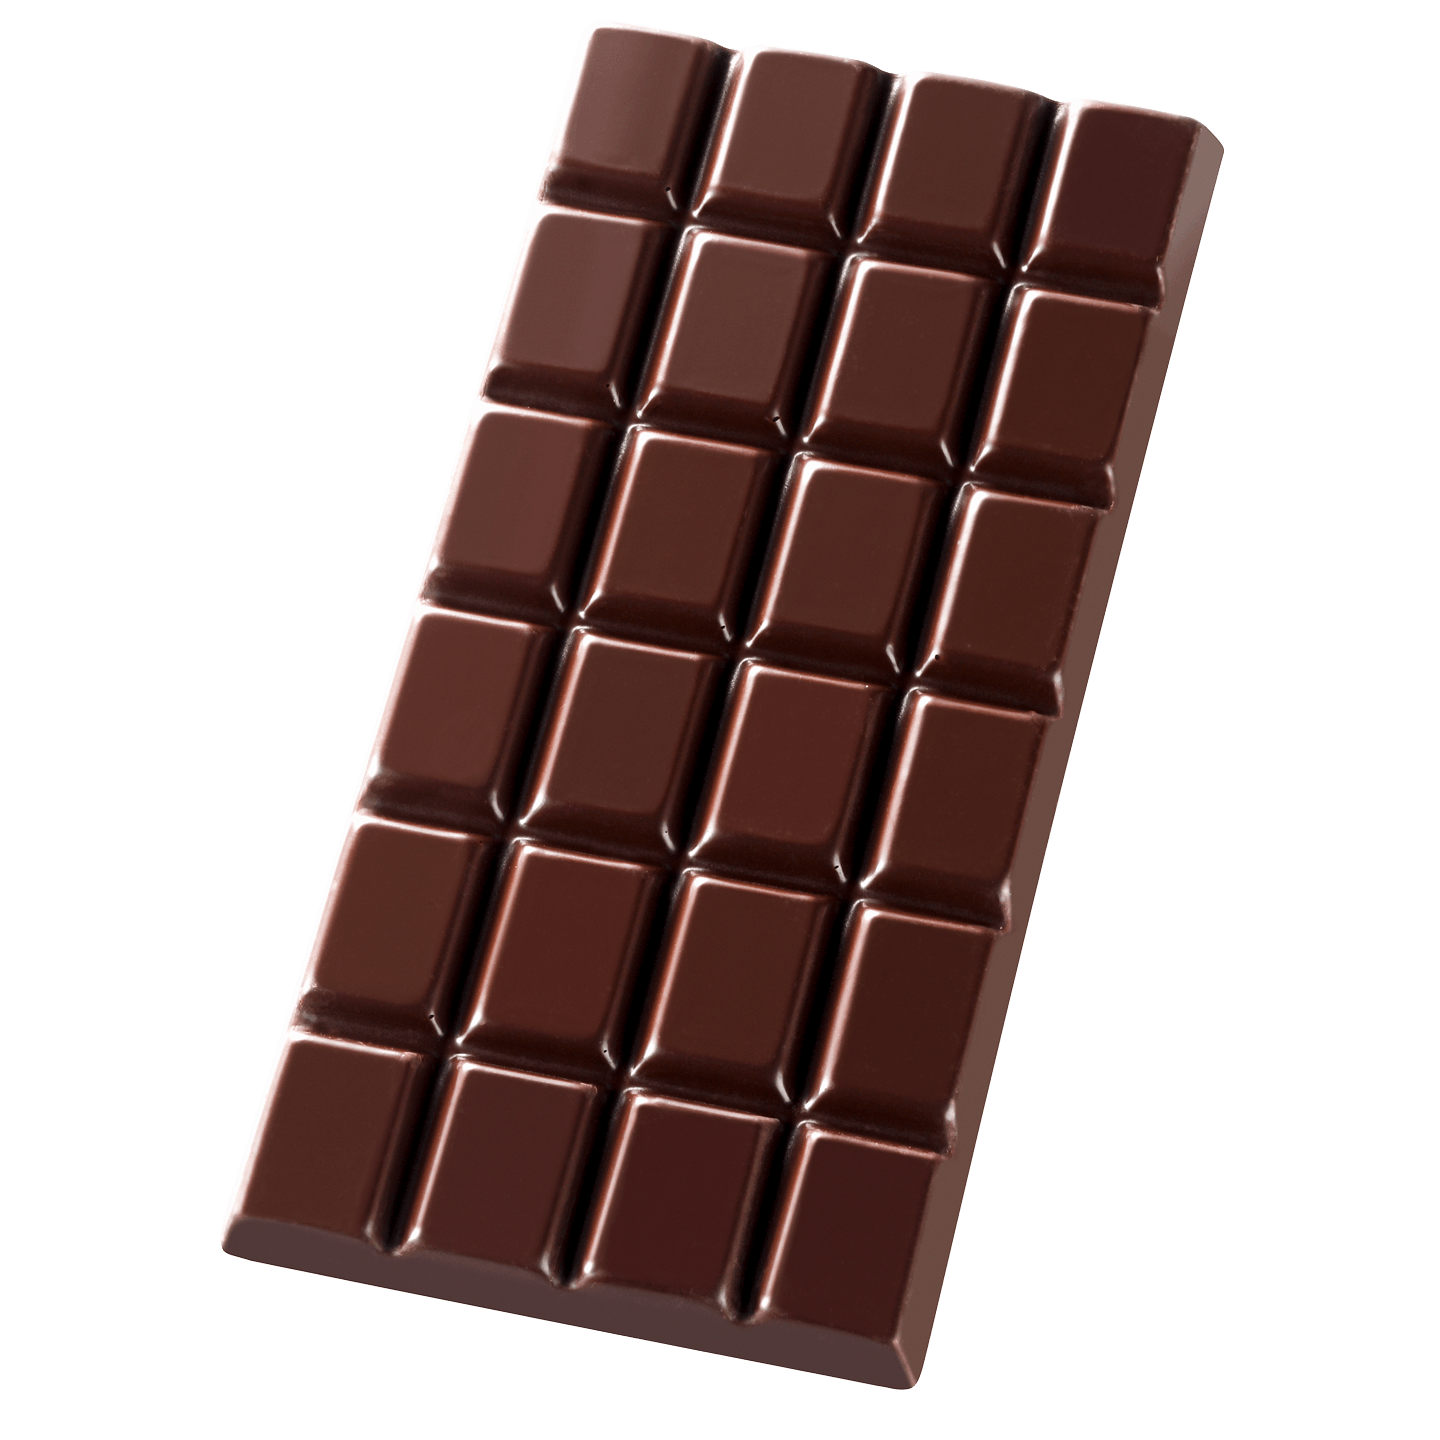 Шоколад на вайлдберриз. Плитка шоколада. Шоколадная плитка. Шоколад темный плиточный. Черный шоколад плитка.